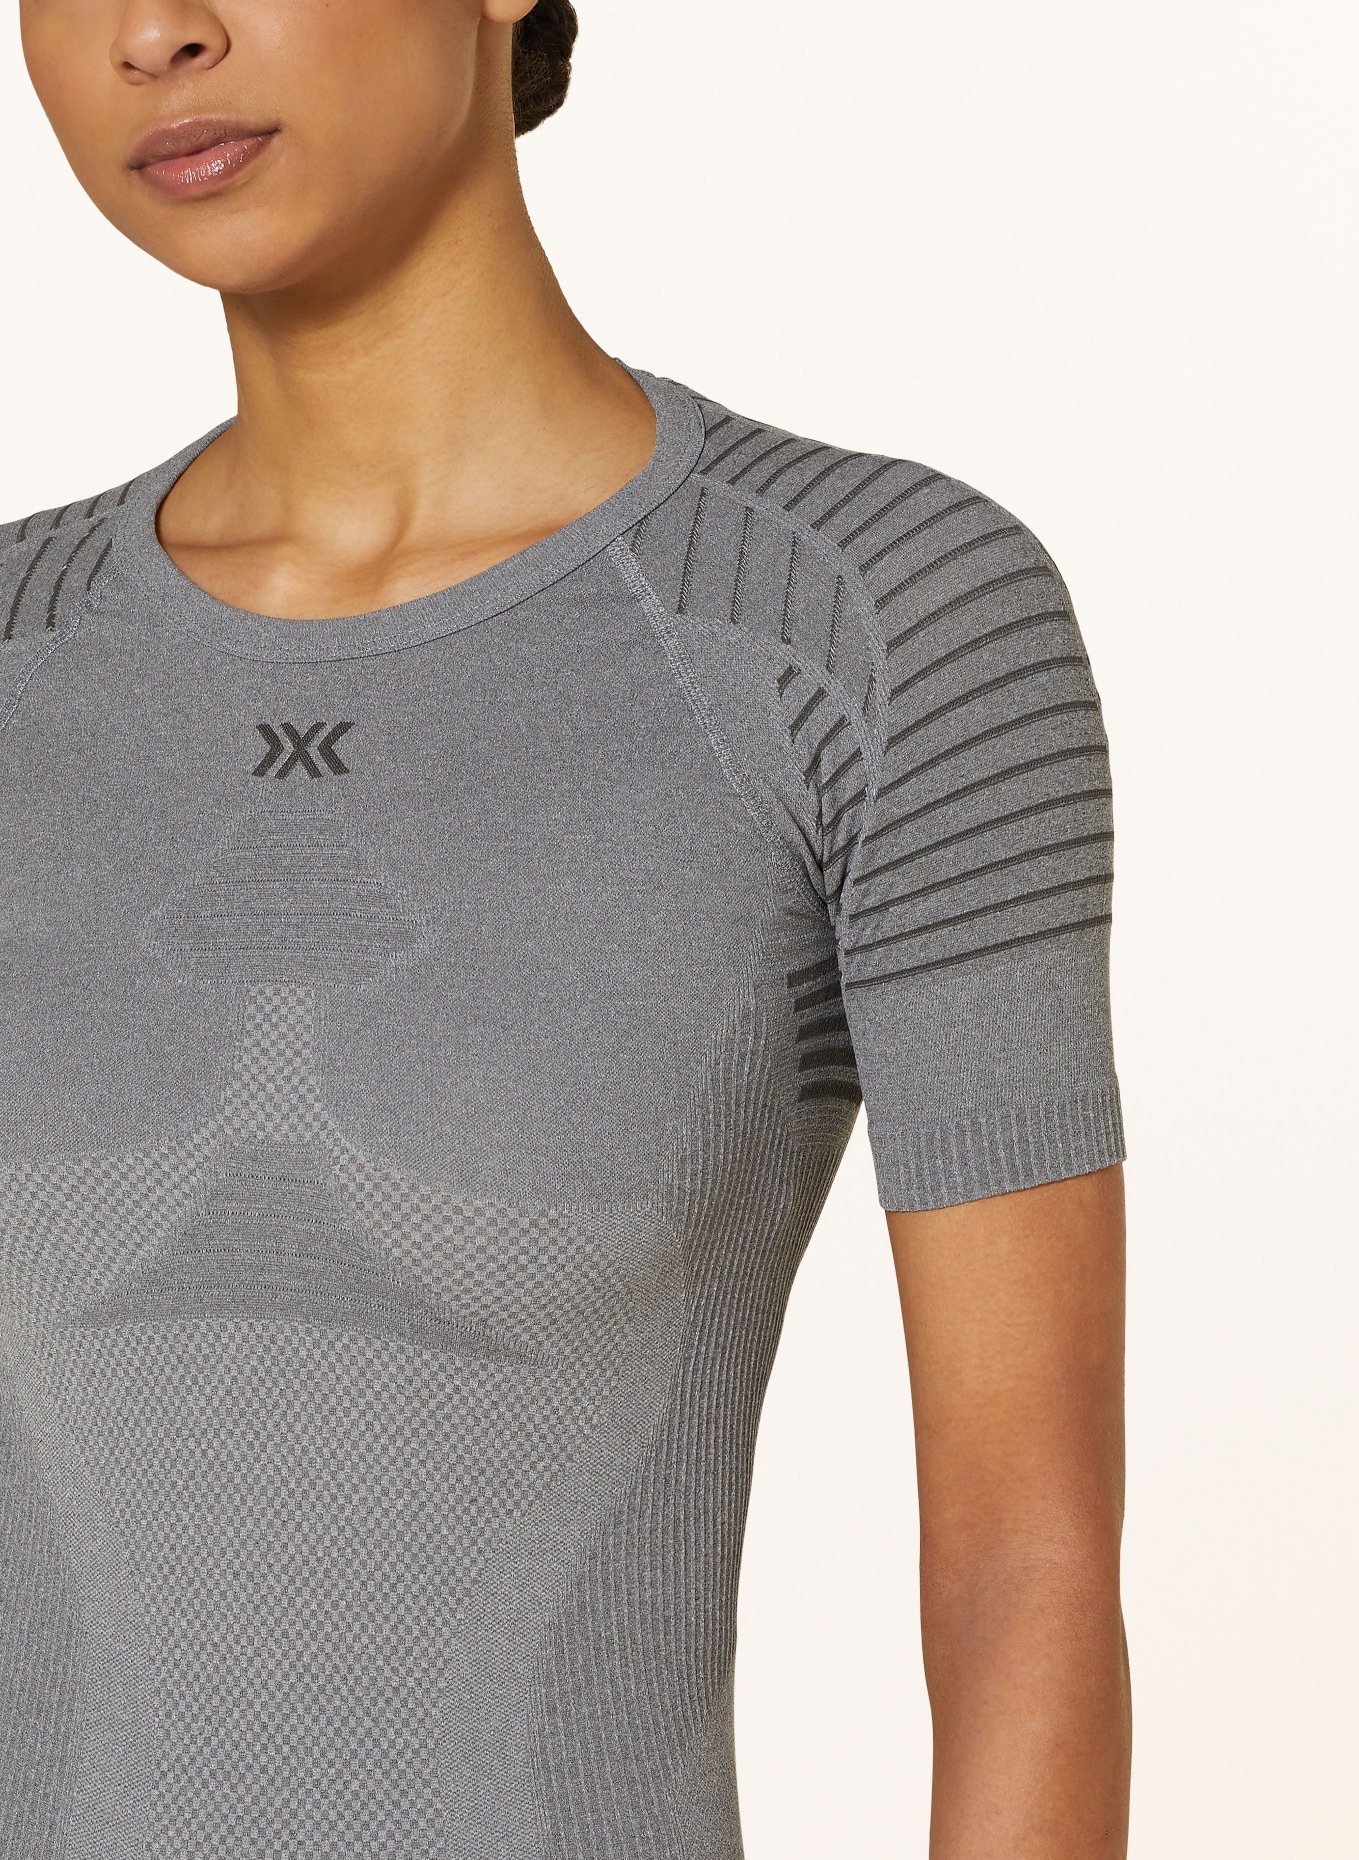 X-BIONIC Funktionswäsche-Shirt X-BIONIC® INVENT 4.0, Farbe: GRAU (Bild 4)